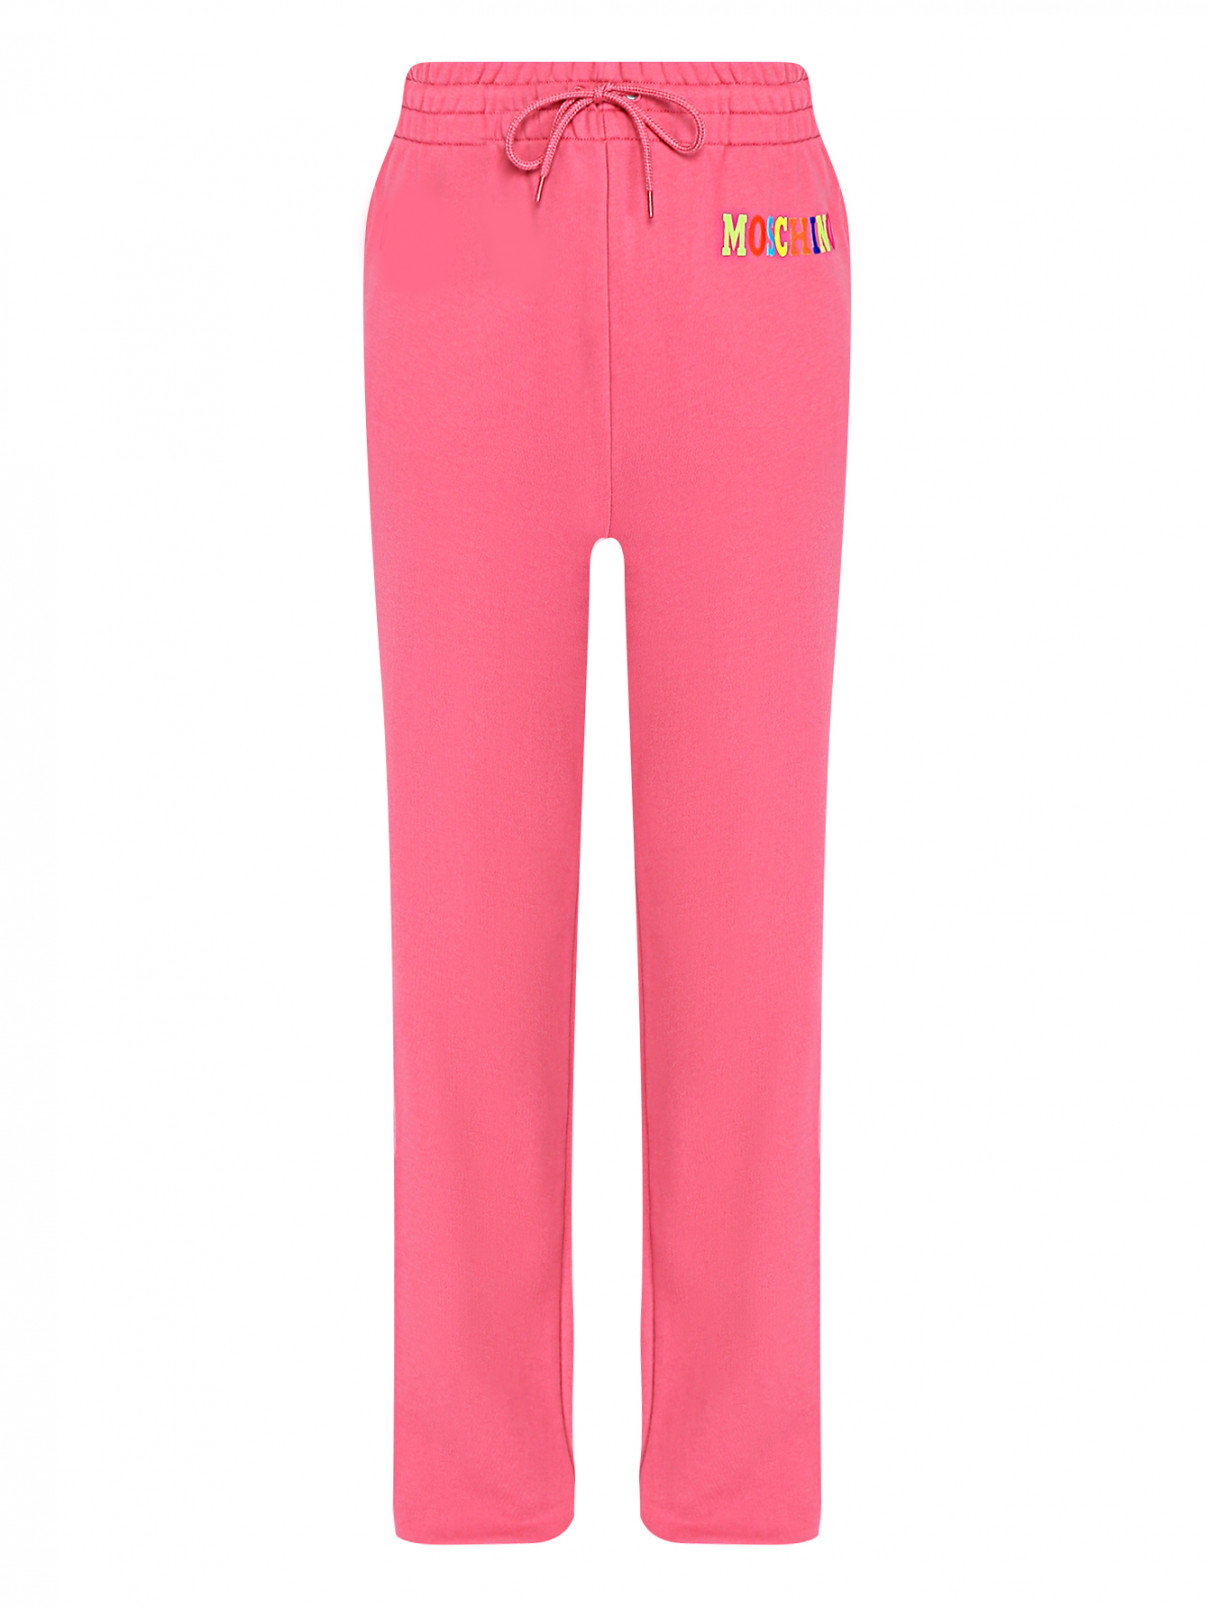 Трикотажные брюки с принтом Moschino  –  Общий вид  – Цвет:  Розовый